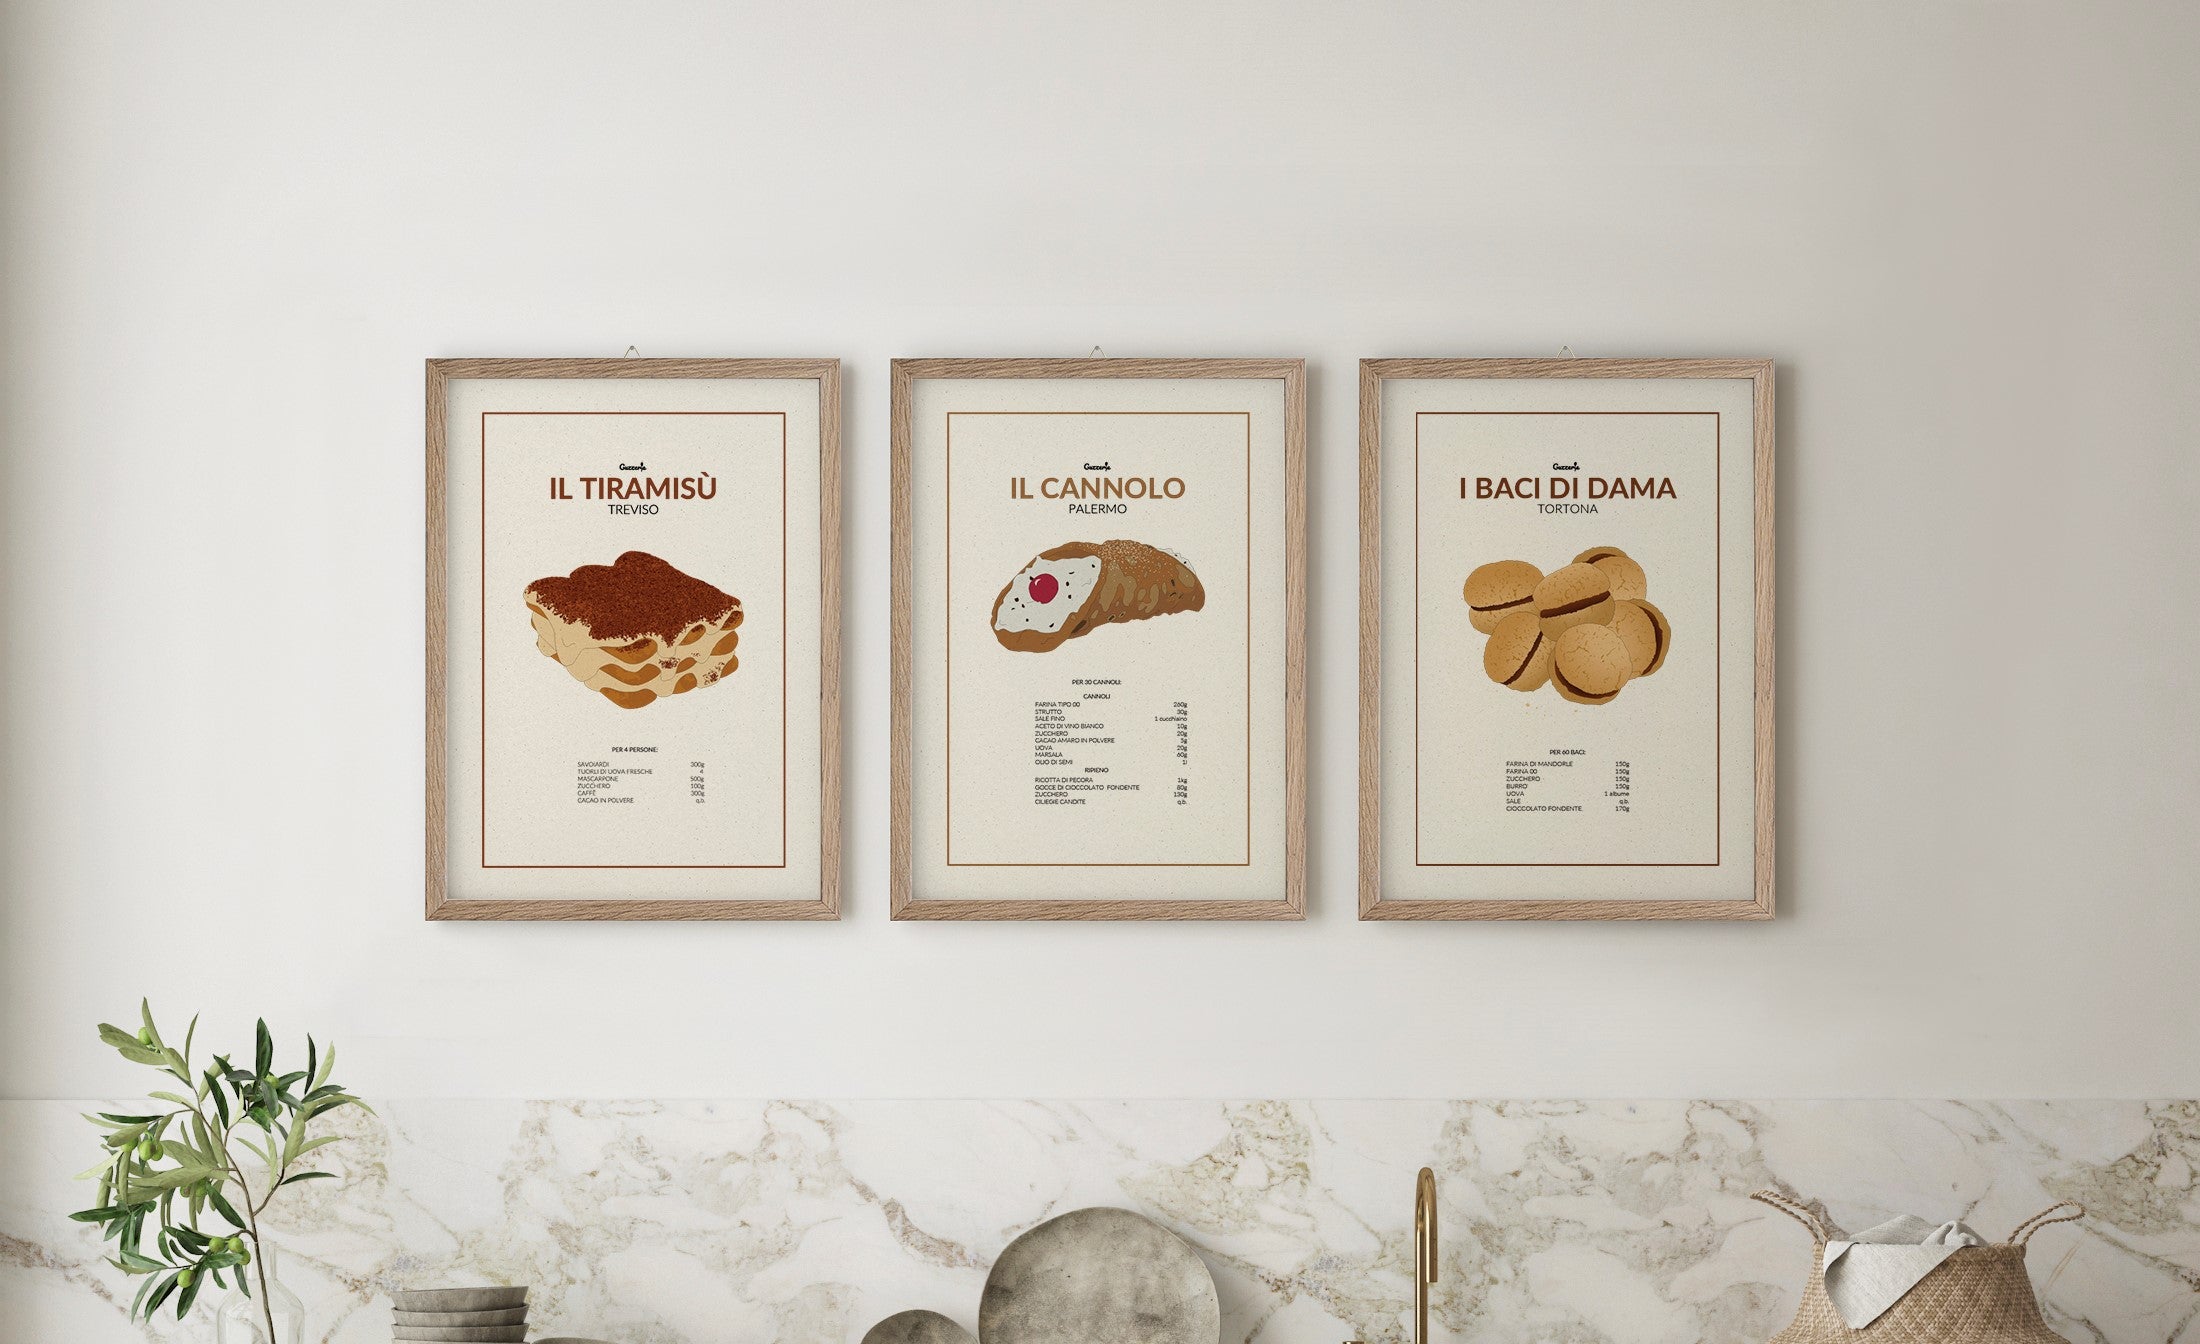 Guzzerie Poster dei Dessert più Iconici